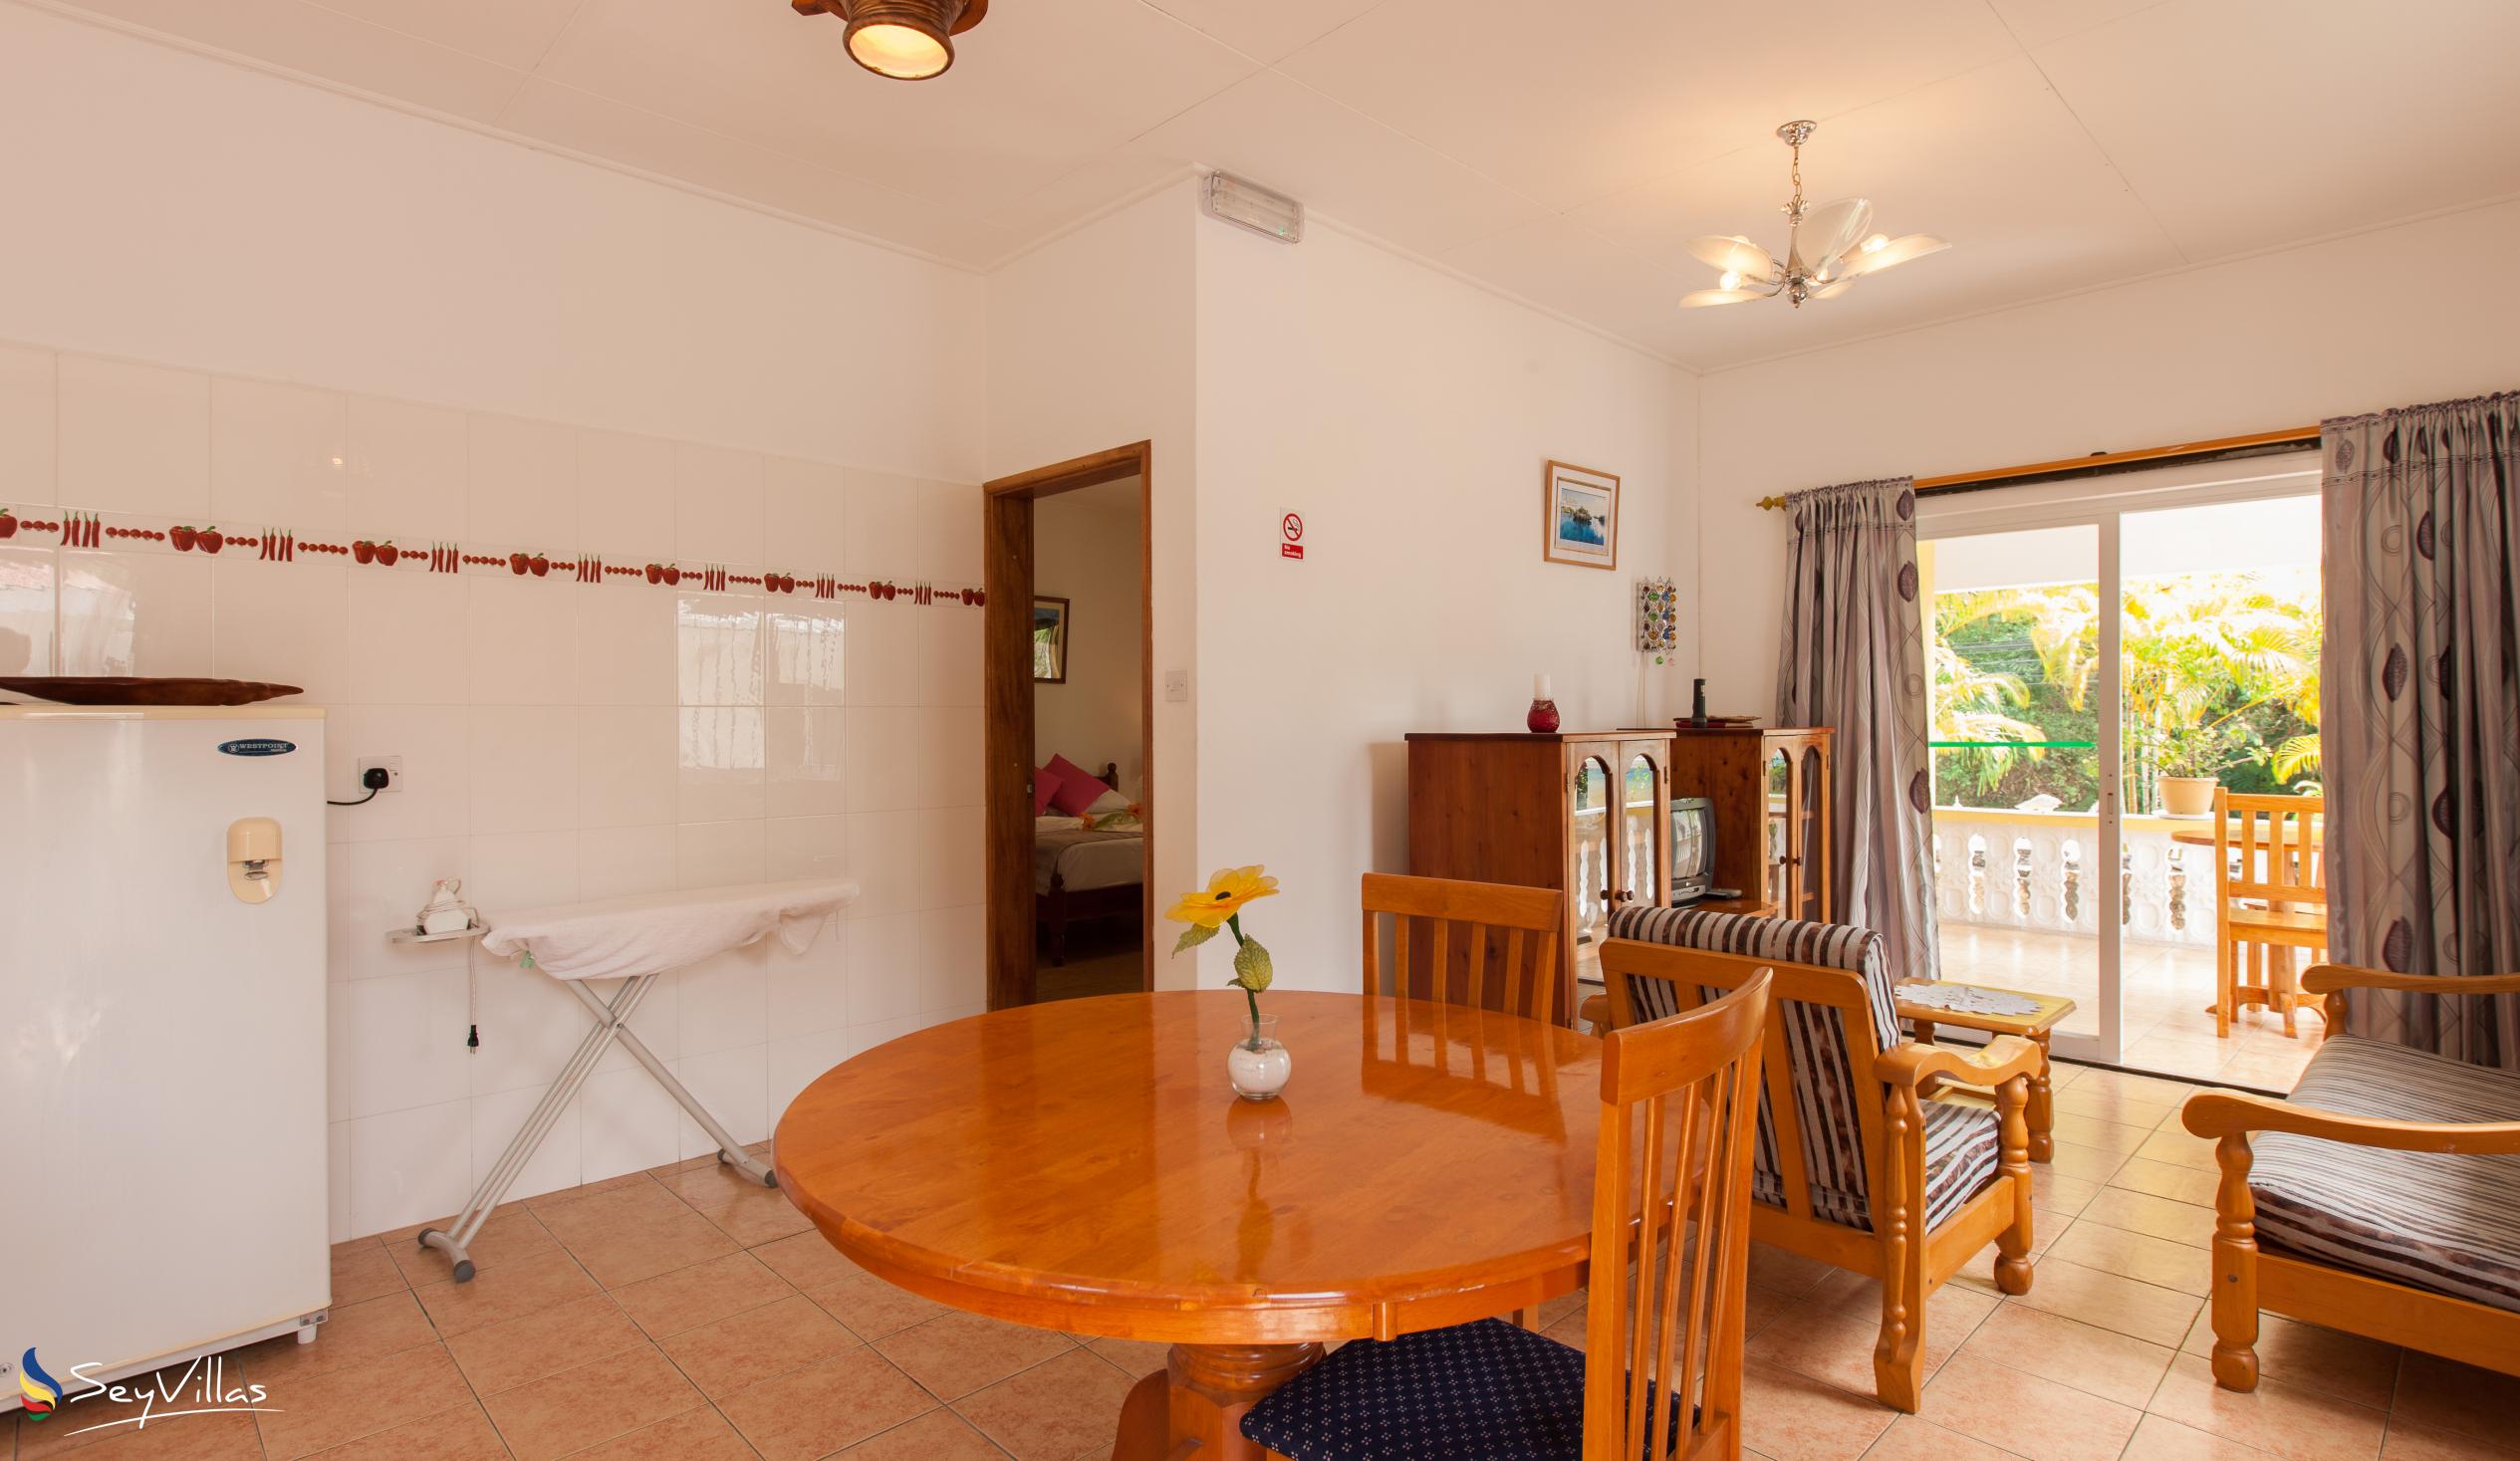 Photo 53: Acquario Villa - 1-Bedroom Apartment - Praslin (Seychelles)